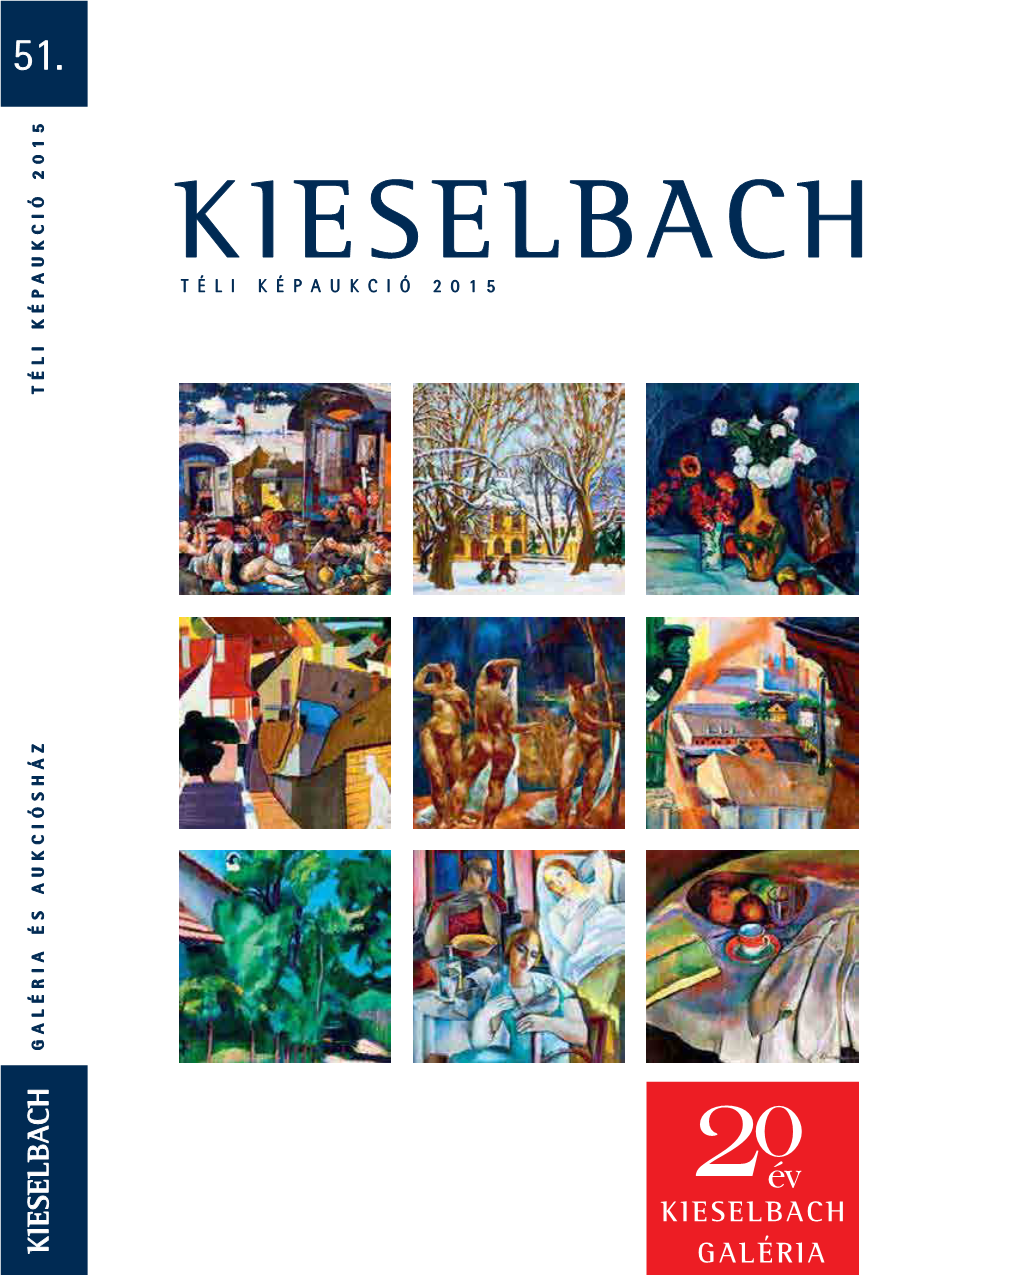 51. Kieselbach Téli Képaukció 2015 Téli Képaukció 2015 Galéria És Aukciósház 0 2Év Kieselbach